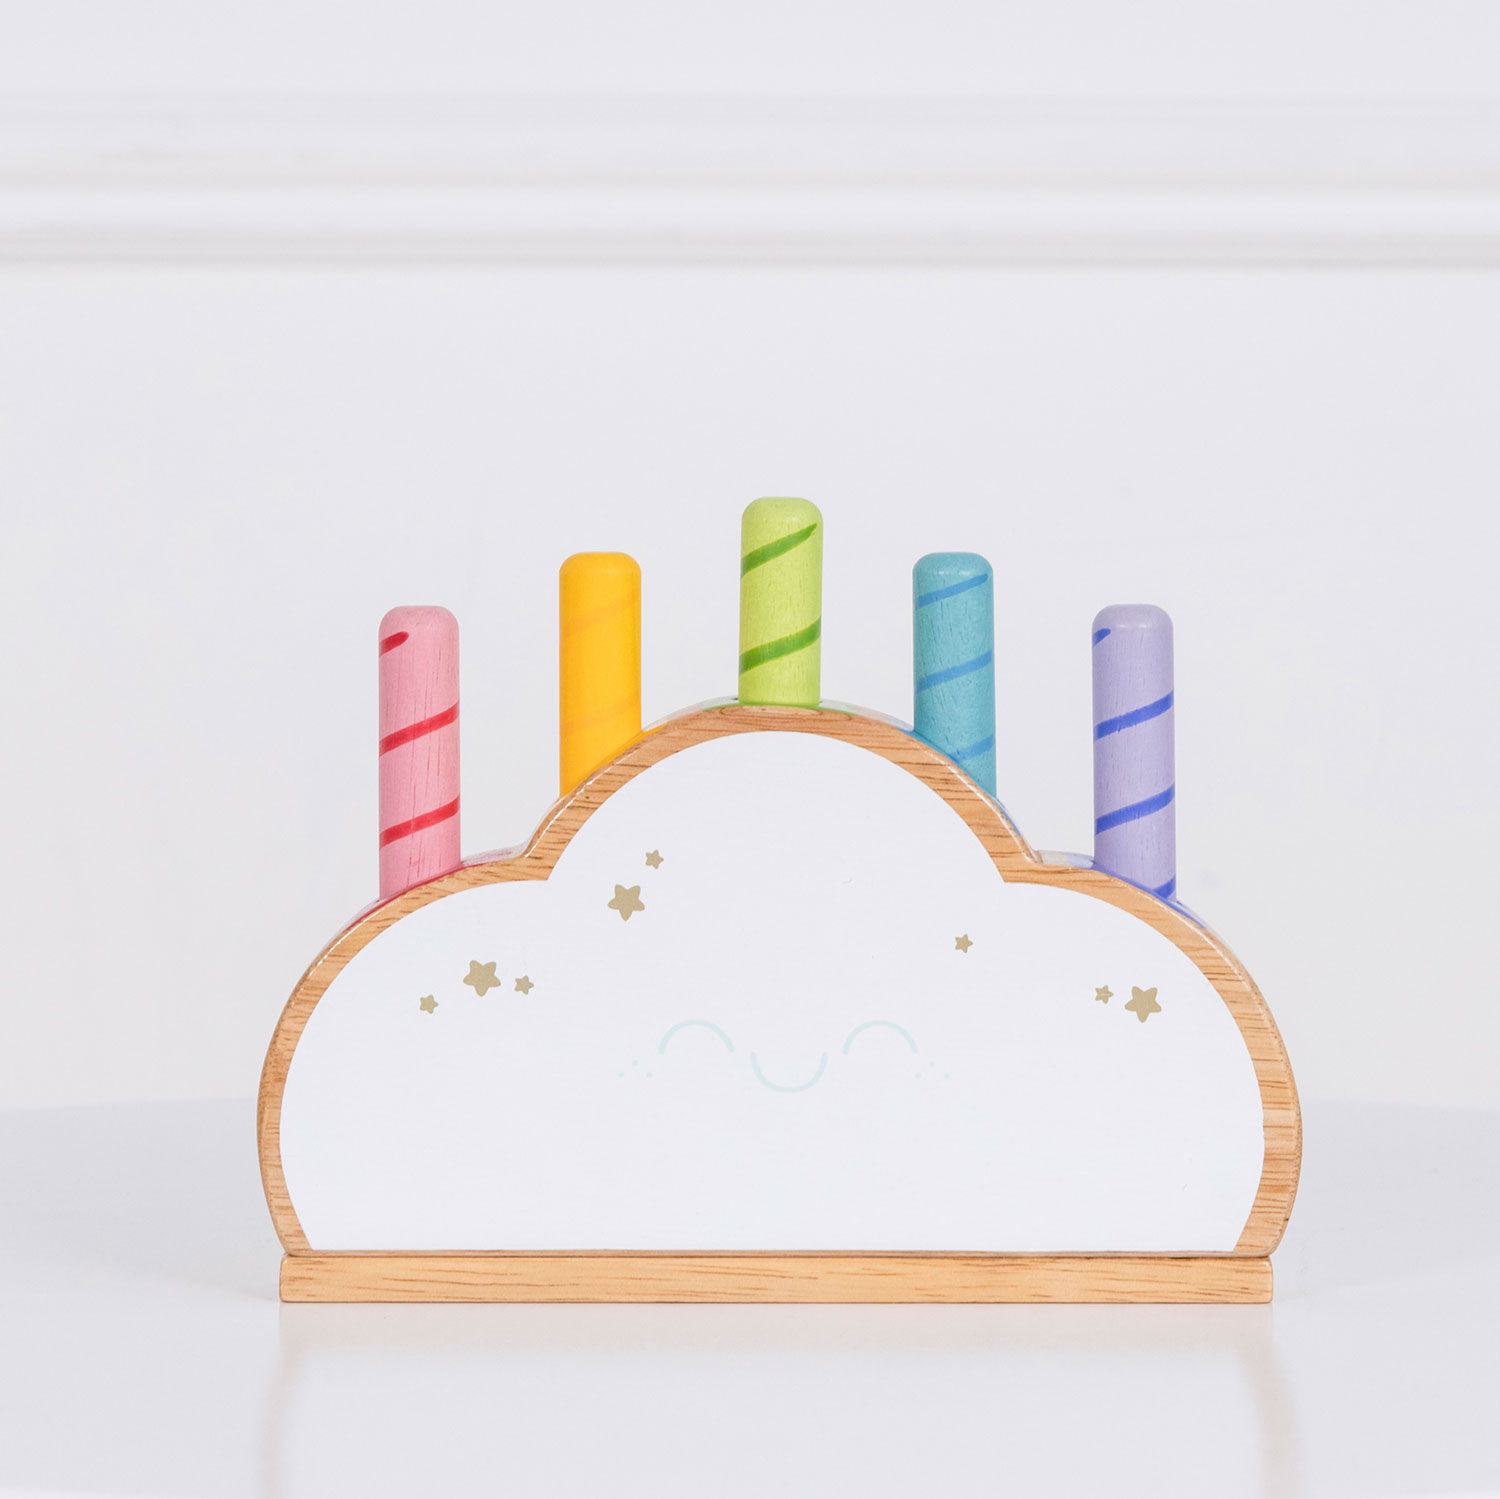 Regenbogenwolke Pop! / Rainbow Cloud Pop-Up Toy